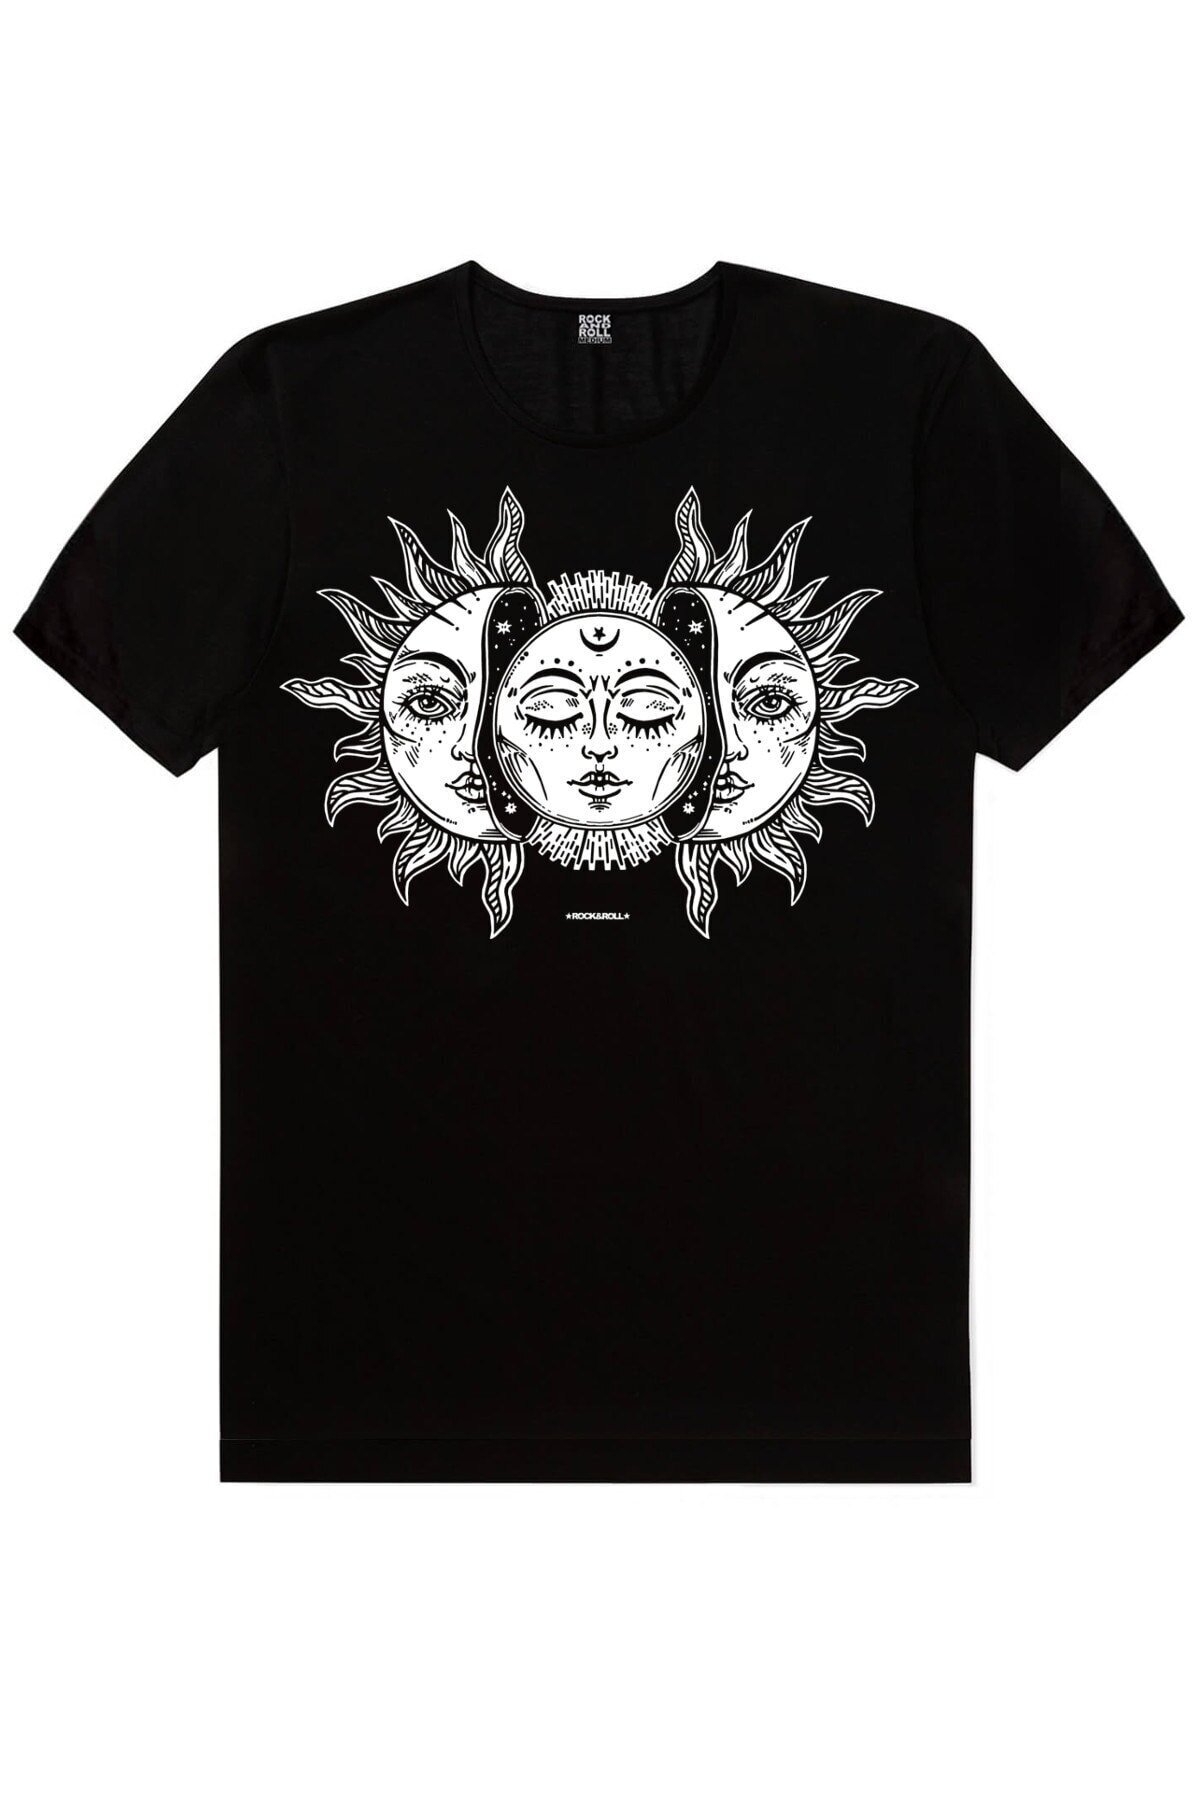 Güneş Sistemi, Biz Ayrılamayız, Ay Güneş Siyah Kadın 3'lü Eko Paket T-Shirt